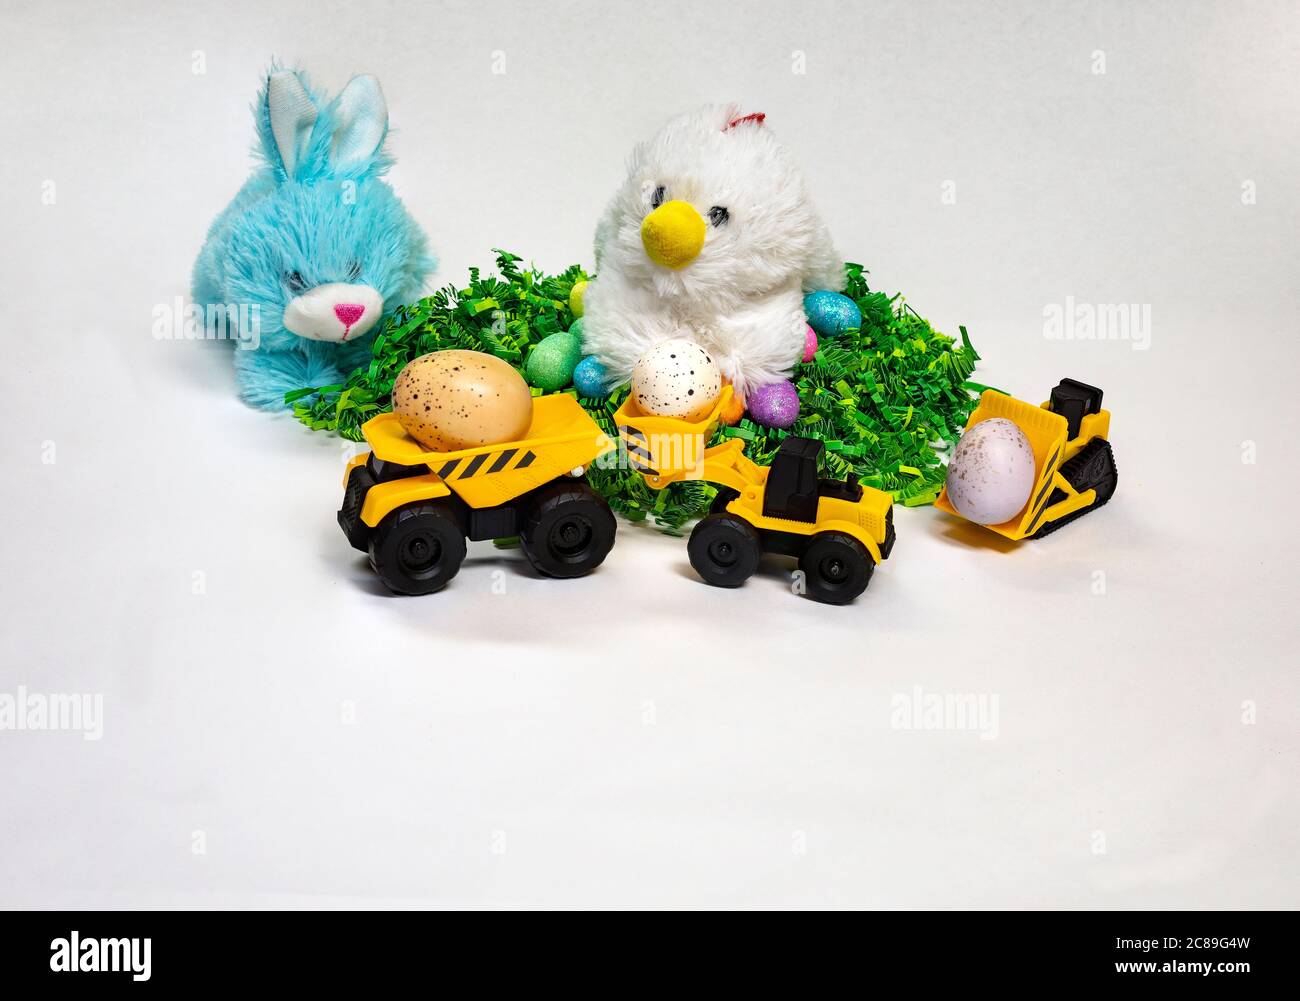 Ostern thematisch Foto von gefüllten Hasen und Henne mit verzierten Ostereiern und ein Kind Spielzeug Bauwagen. Stockfoto